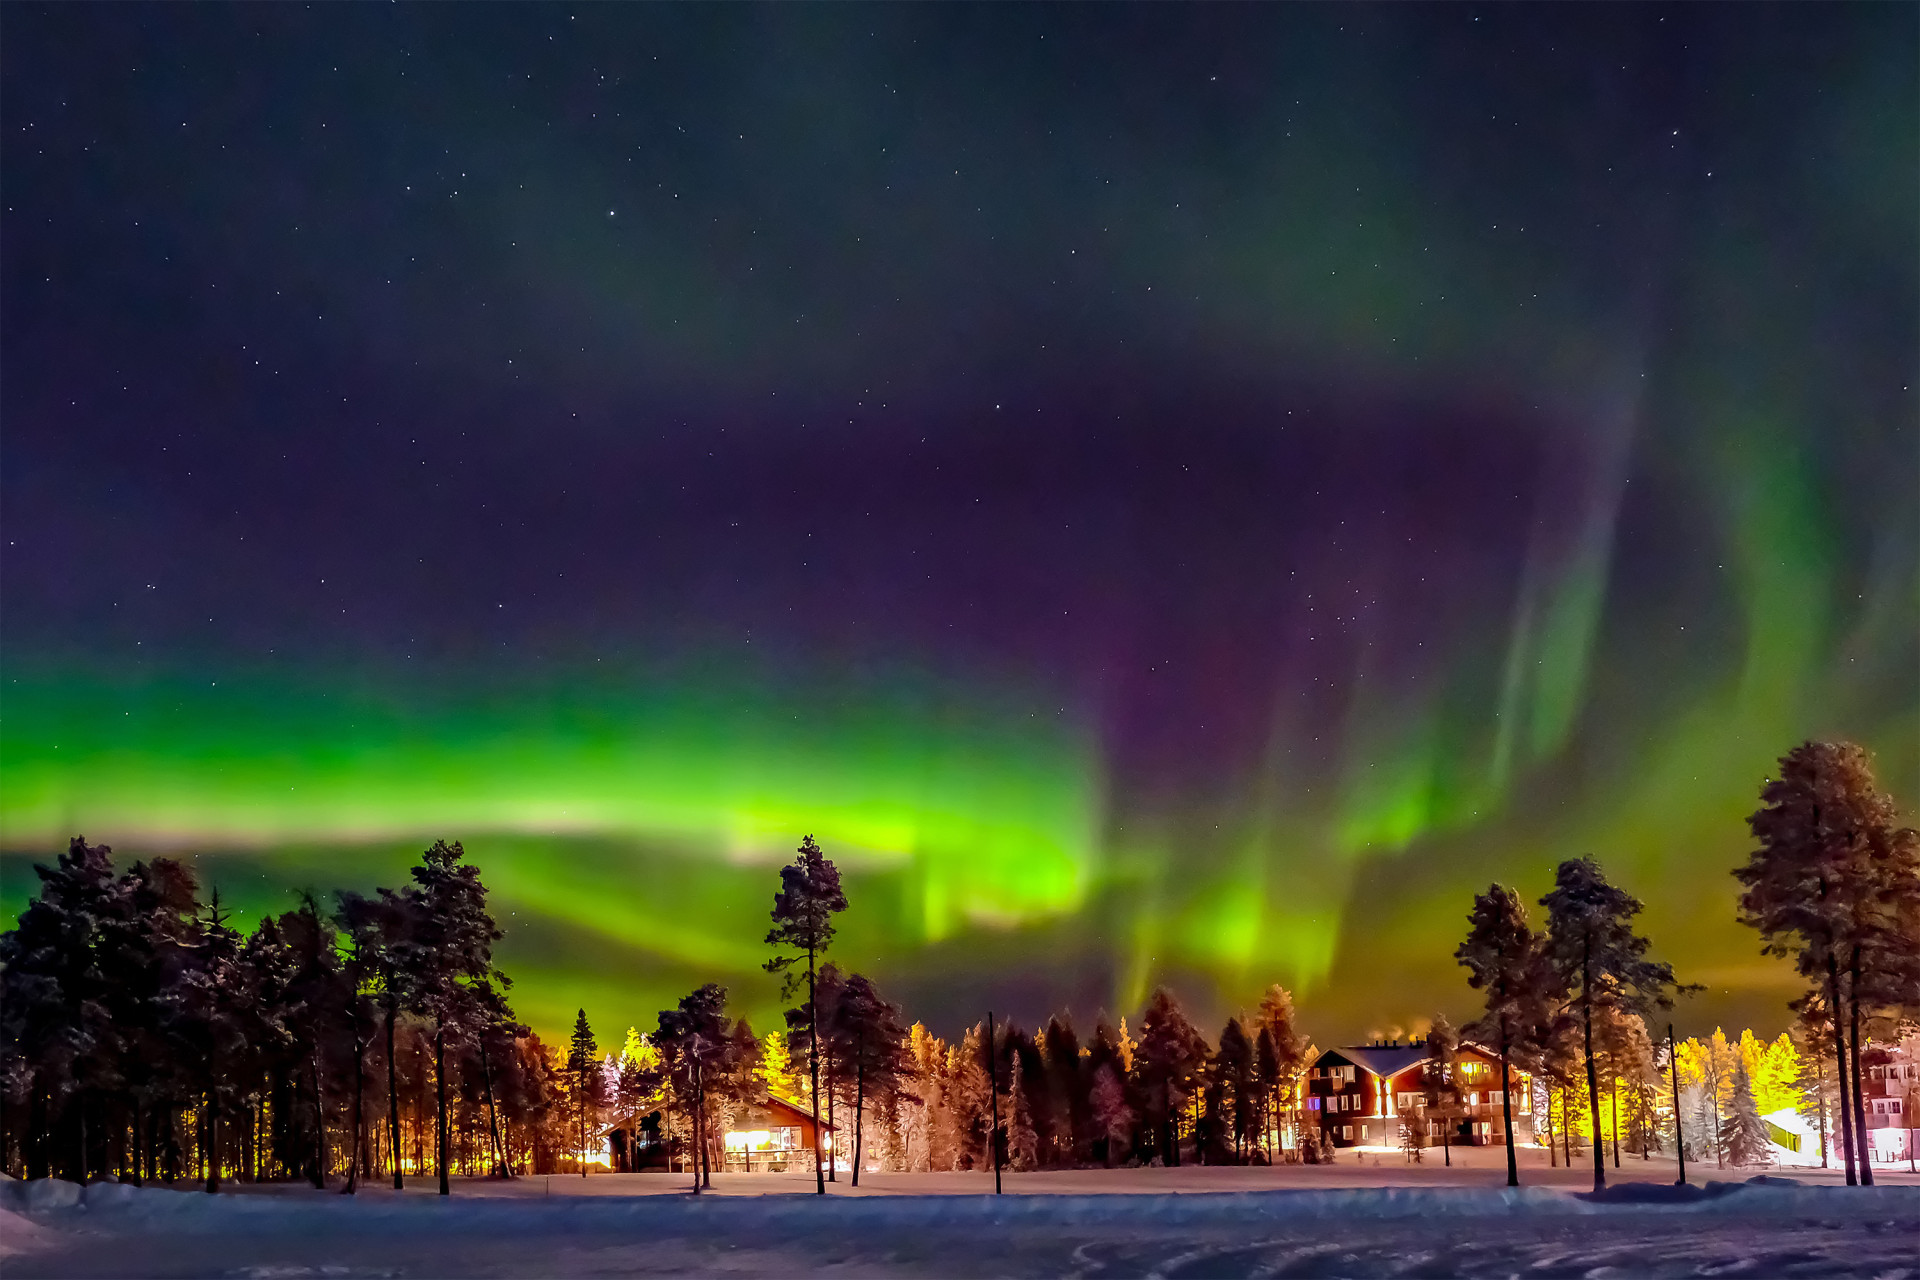 Des aurores boréales illuminent le ciel au-dessus de la Laponie arctique. Gelée en hiver, la région est associée à Noël et au père Noël depuis de nombreuses années.<p><a href="https://www.msn.com/fr-fr/community/channel/vid-7xx8mnucu55yw63we9va2gwr7uihbxwc68fxqp25x6tg4ftibpra?cvid=94631541bc0f4f89bfd59158d696ad7e">Suivez-nous et accédez tous les jours à du contenu exclusif</a></p>